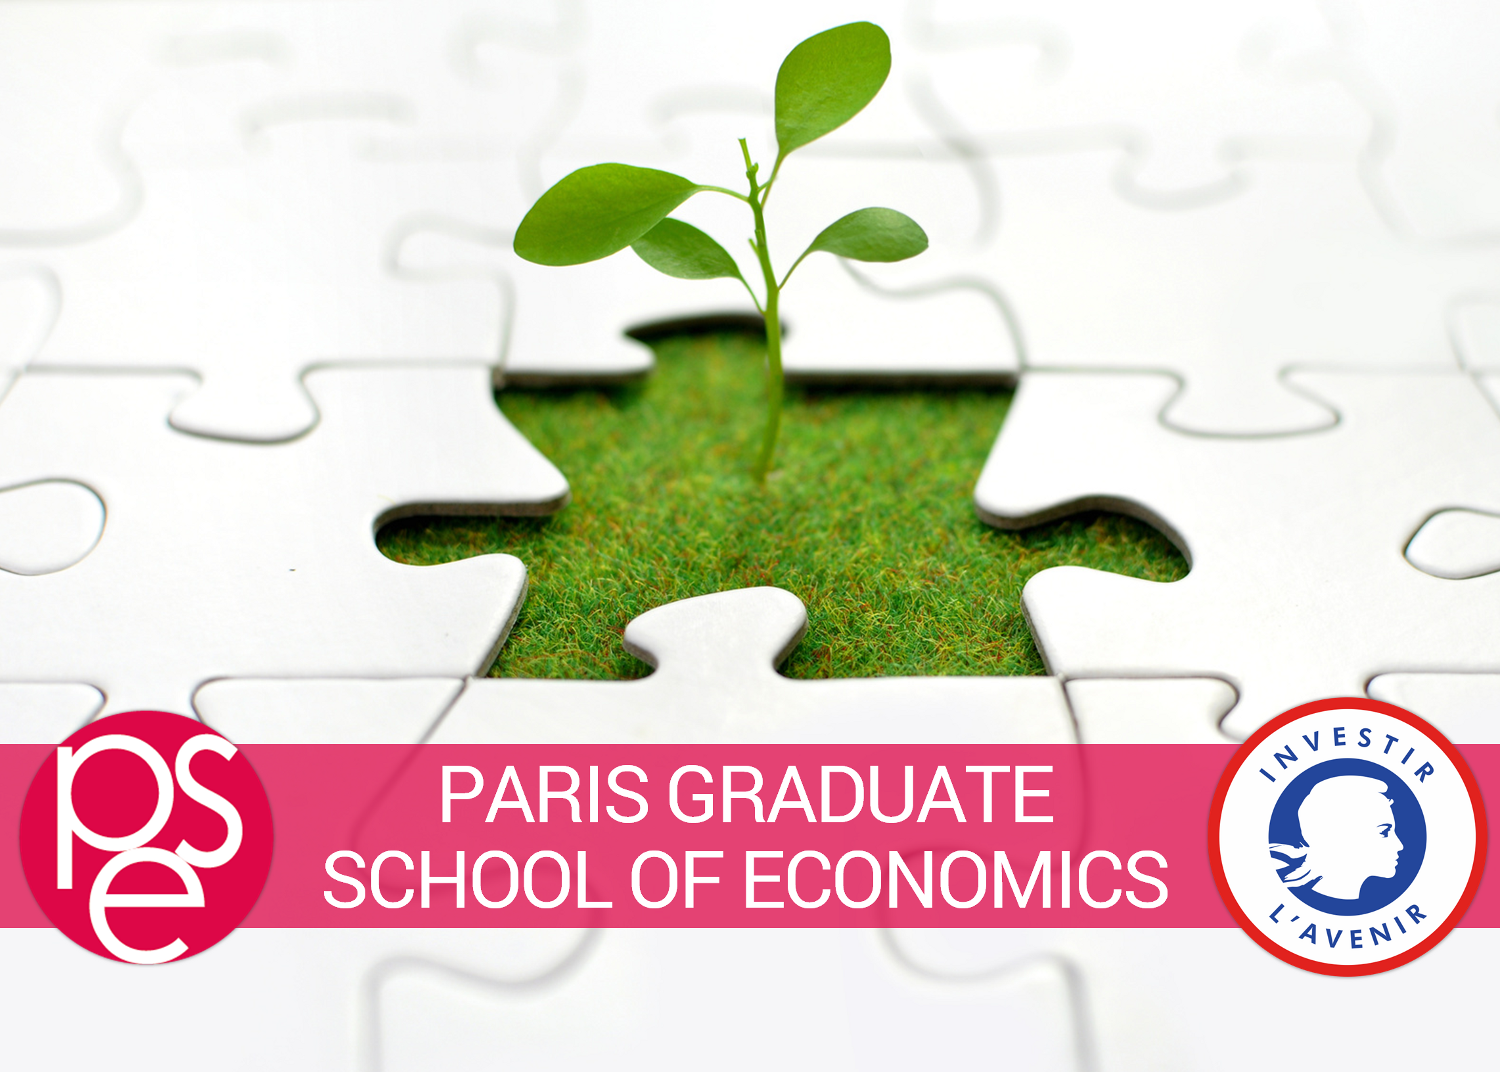 Paris Graduate School of Economics (PgSE)